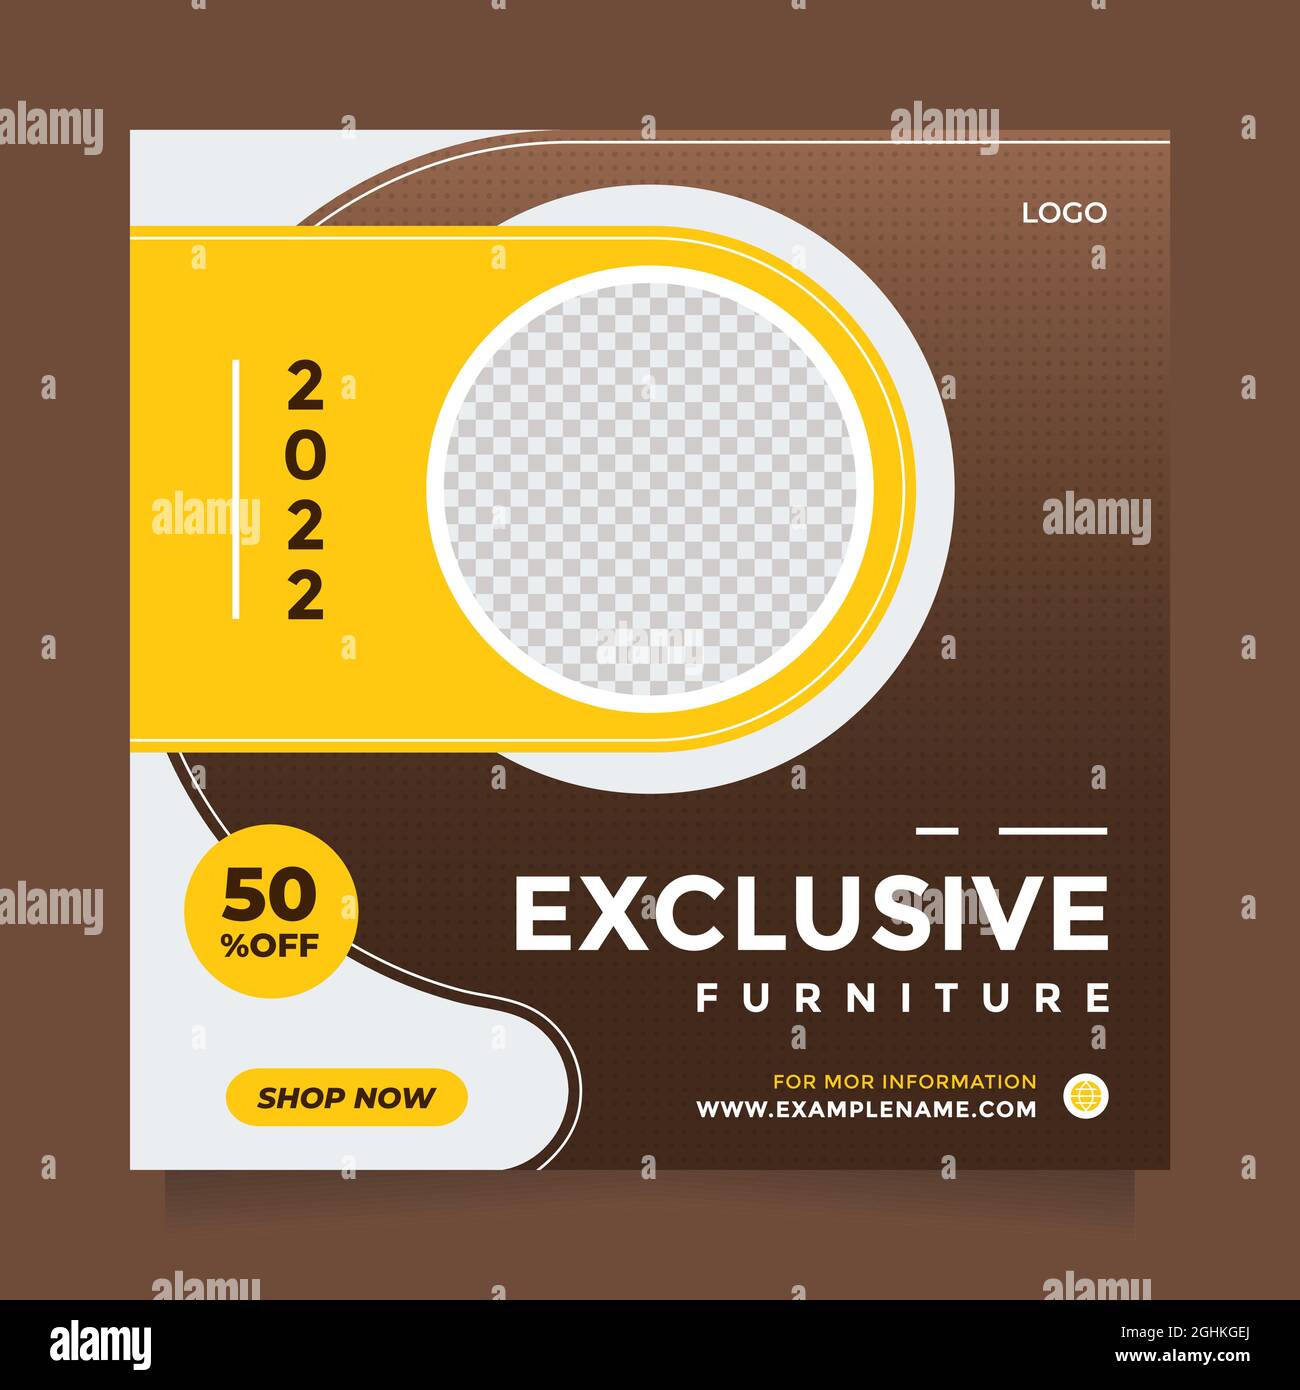 Saubere Möbel Verkauf Förderung Design-Vorlage für Social Media instagram Post und Banner . Moderner braun-gelber Designvektor mit einer Fotocollage Stock Vektor